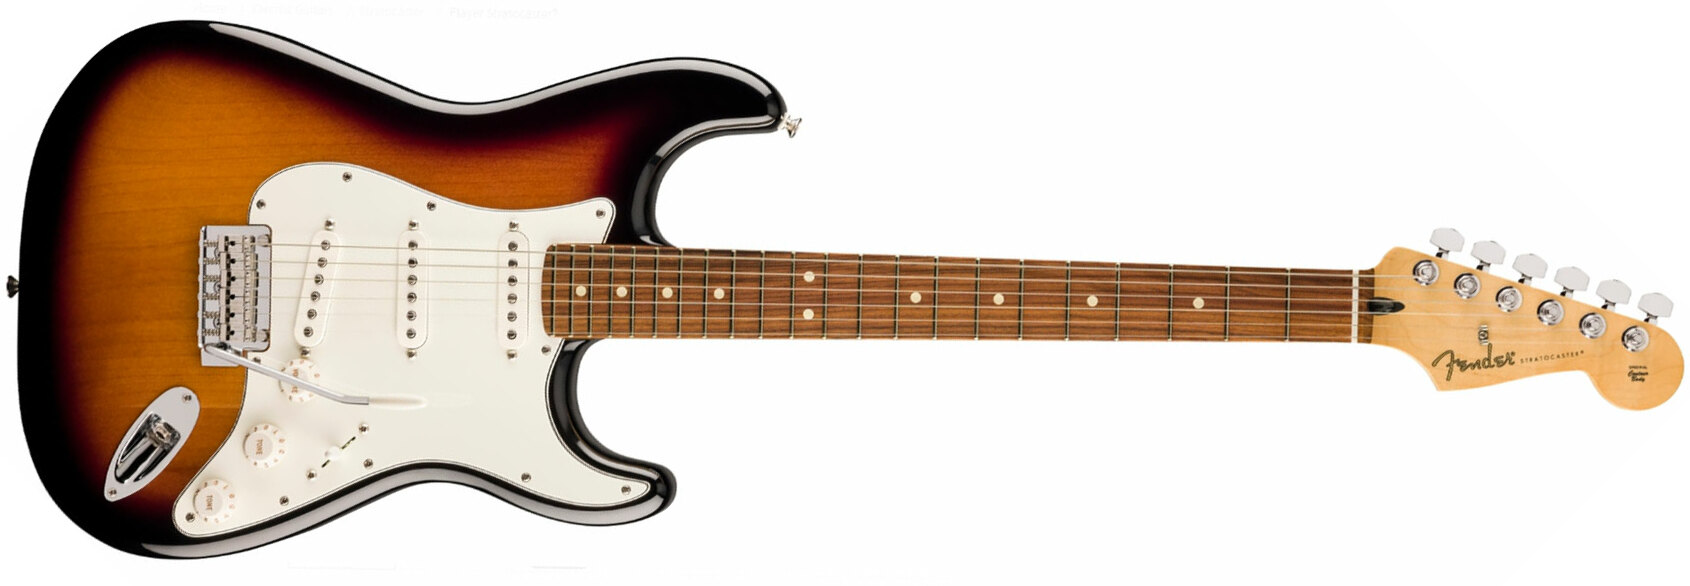 Fender Strat Player 70th Anniversary 3s Trem Pf - 2-color Sunburst - Guitare Électrique Forme Str - Main picture